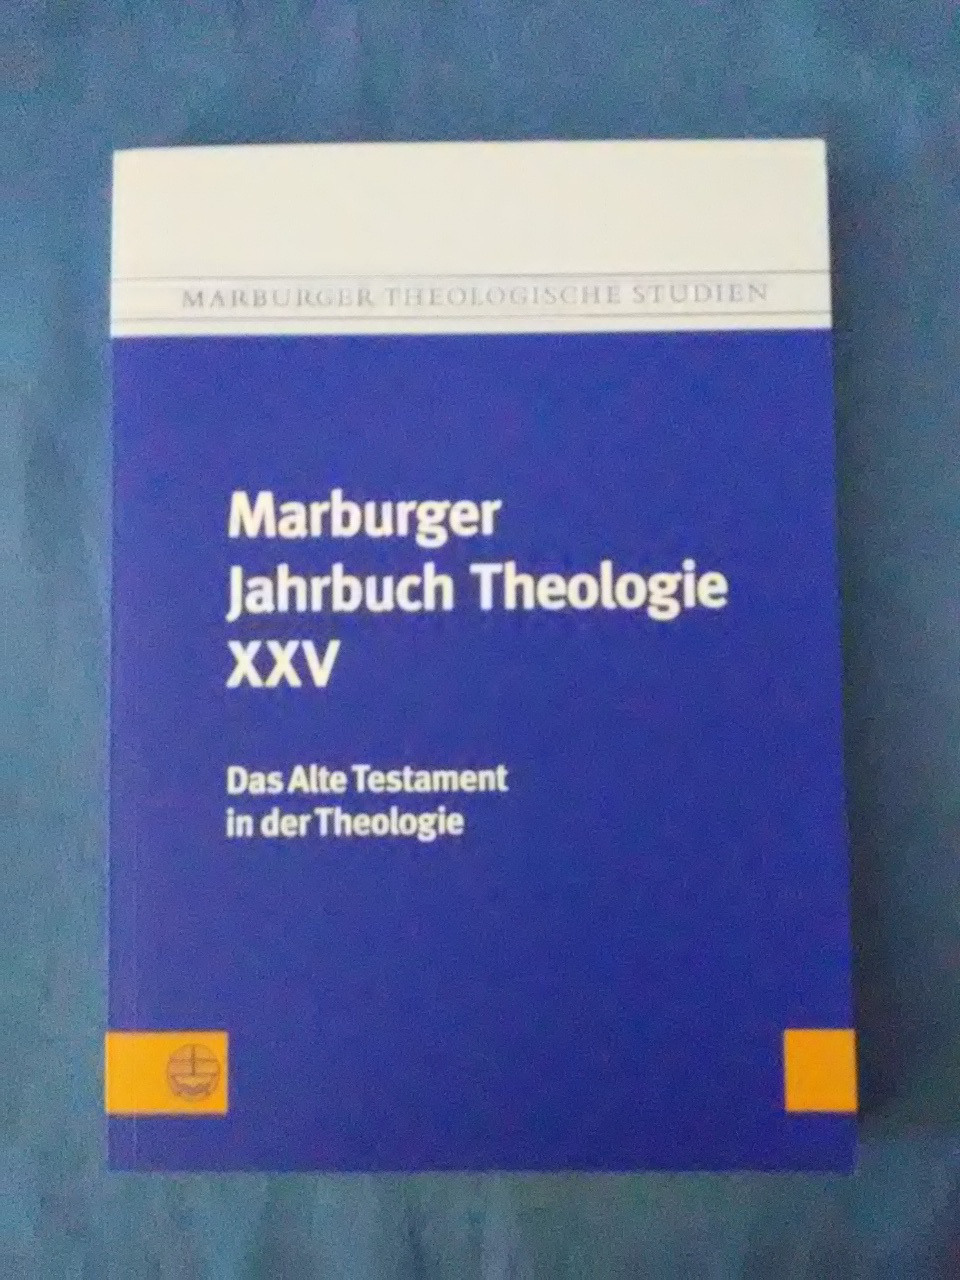 Marburger Jahrbuch Theologie XXV. Das Alte Testament in der Theologie. Marburger theologische Studien ; 119. - Gräb-Schmidt, Elisabeth (Herausgeber) und Reiner (Herausgeber) Preul